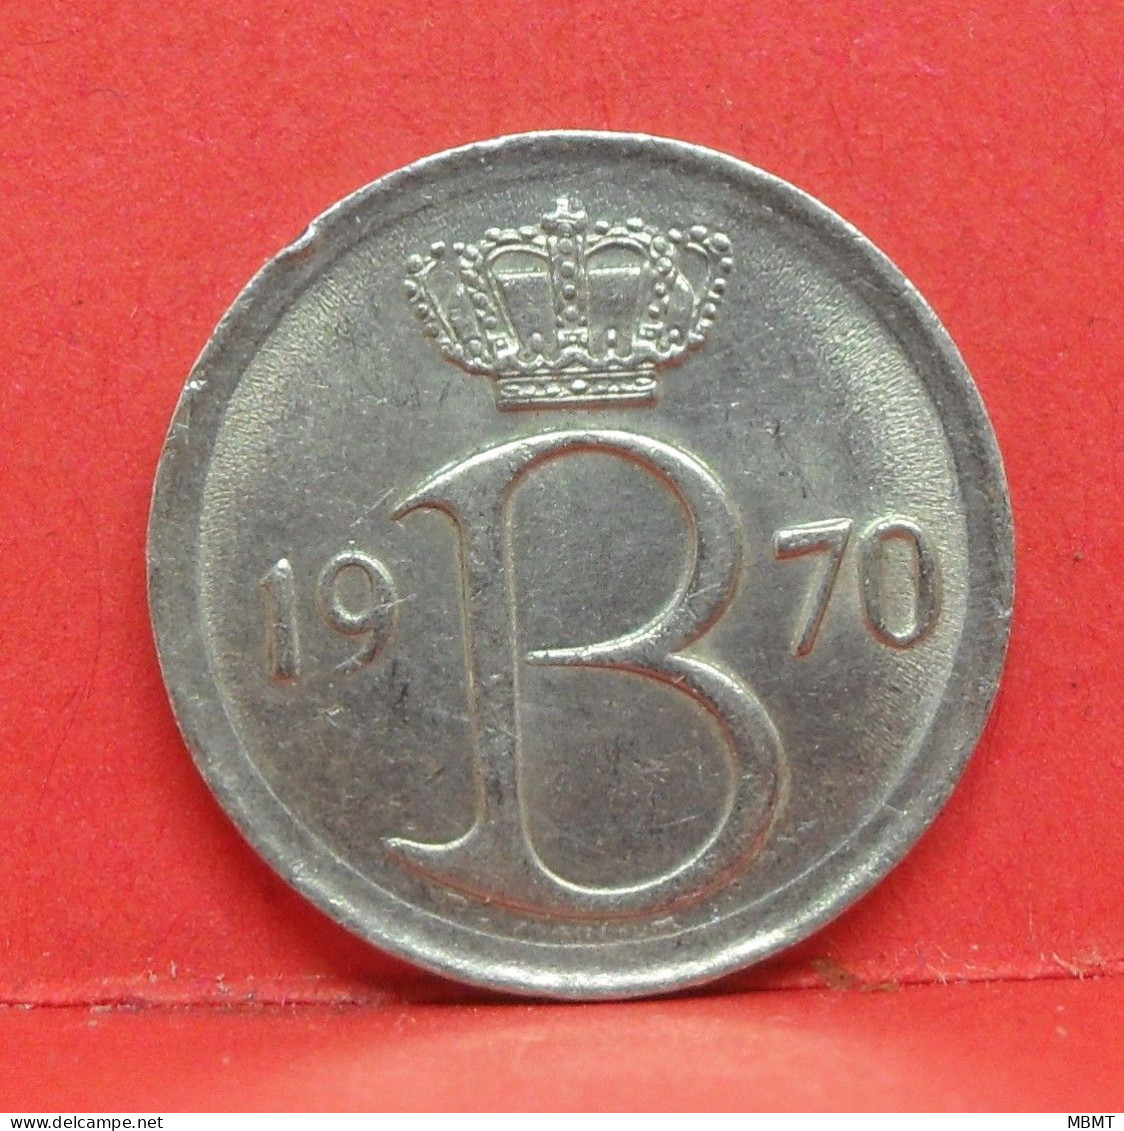 25 Centimes 1970 - TTB - Pièce Monnaie Belgique - Article N°1687 - 25 Cent